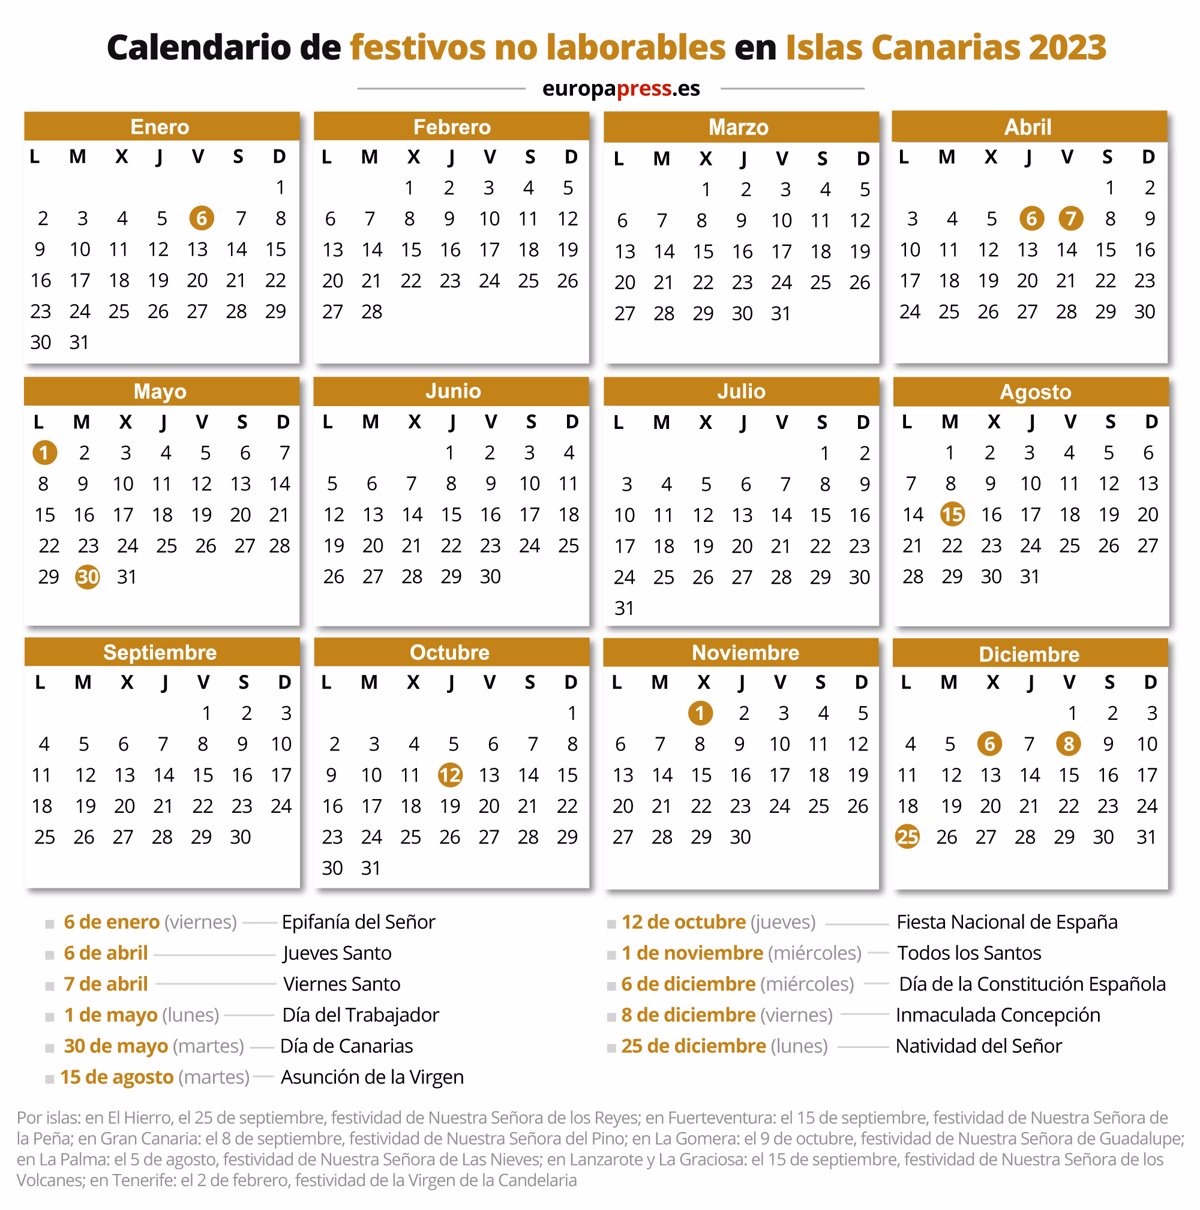 Calendario Dias Festivos 2023 Canarias7 Imagesee Images and Photos finder